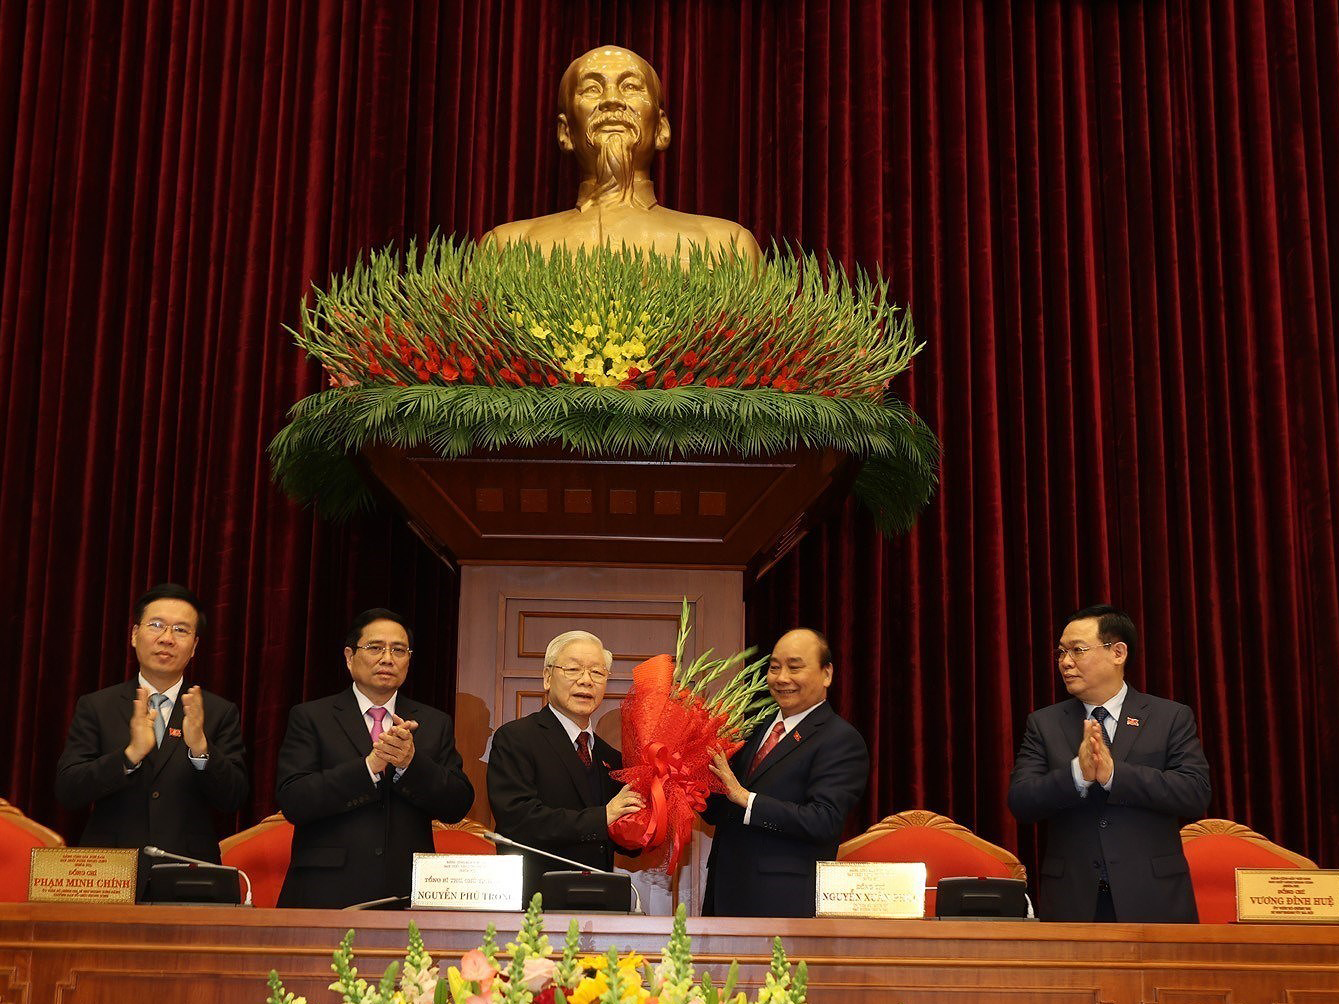 Ông Nguyễn Phú Trọng tái đắc cử Tổng Bí thư khóa XIII